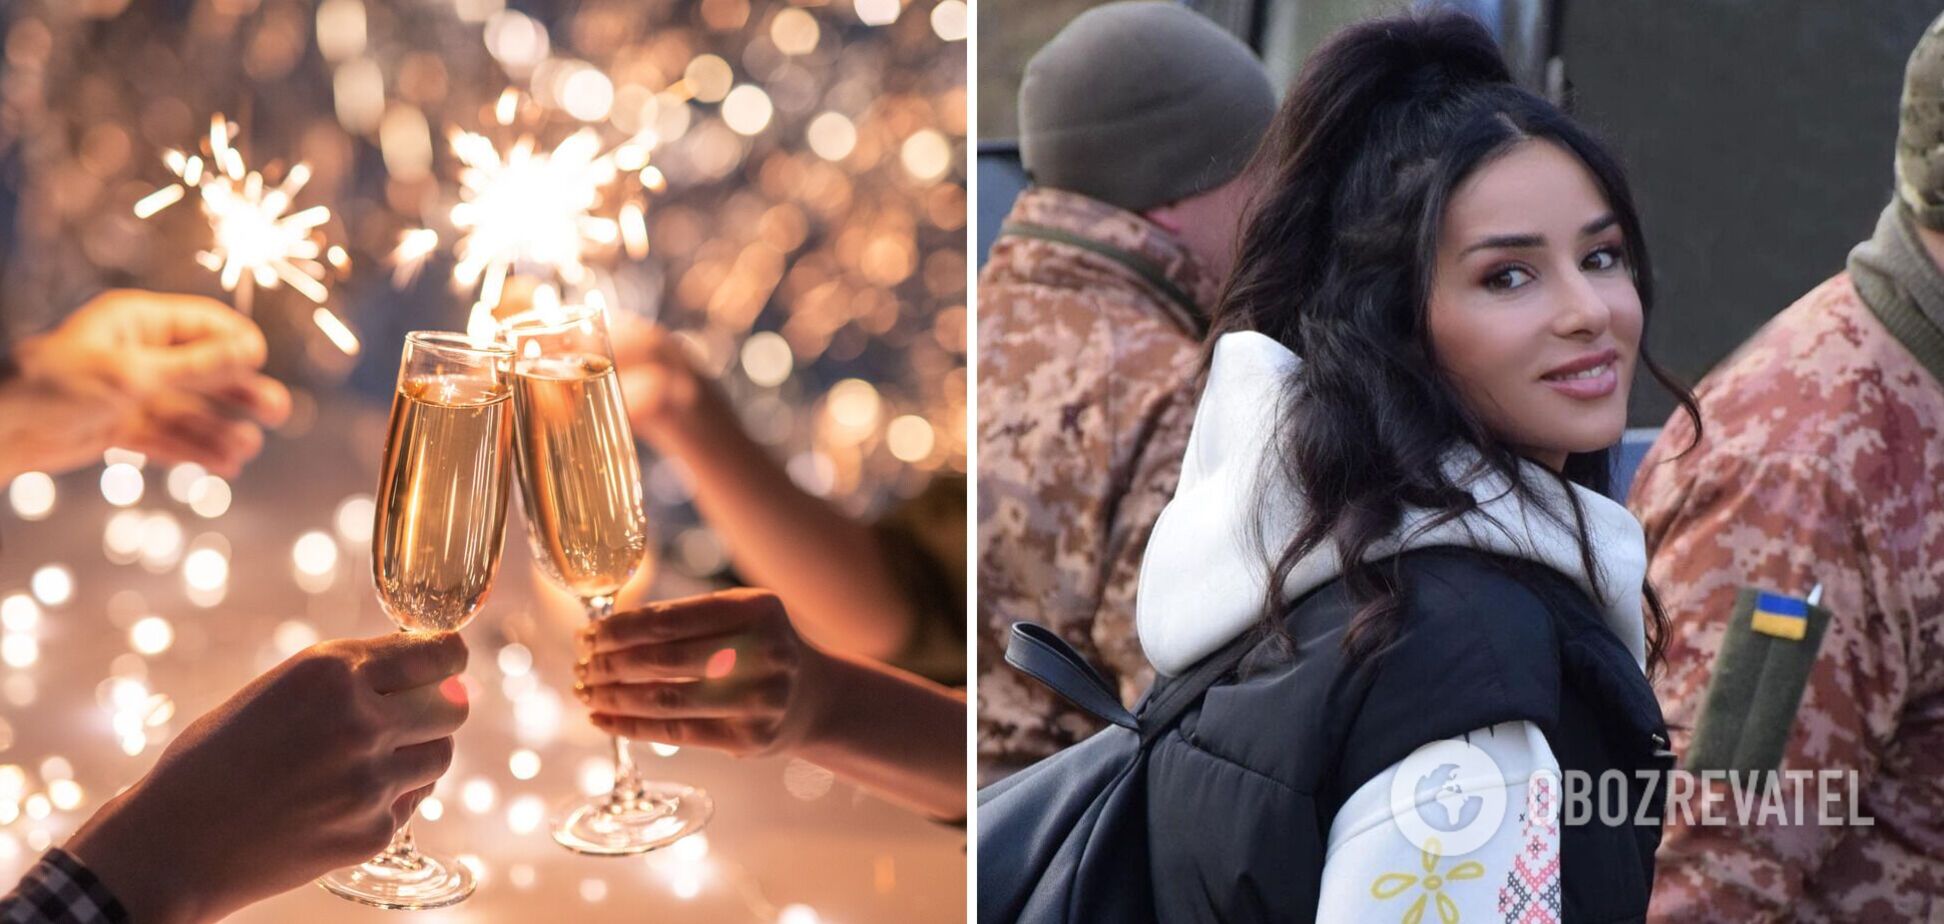 Злата Огнєвіч пояснила, чому буде святкувати Новий рік під час війни: мучило сумління, поки не поспілкувалася з військовим